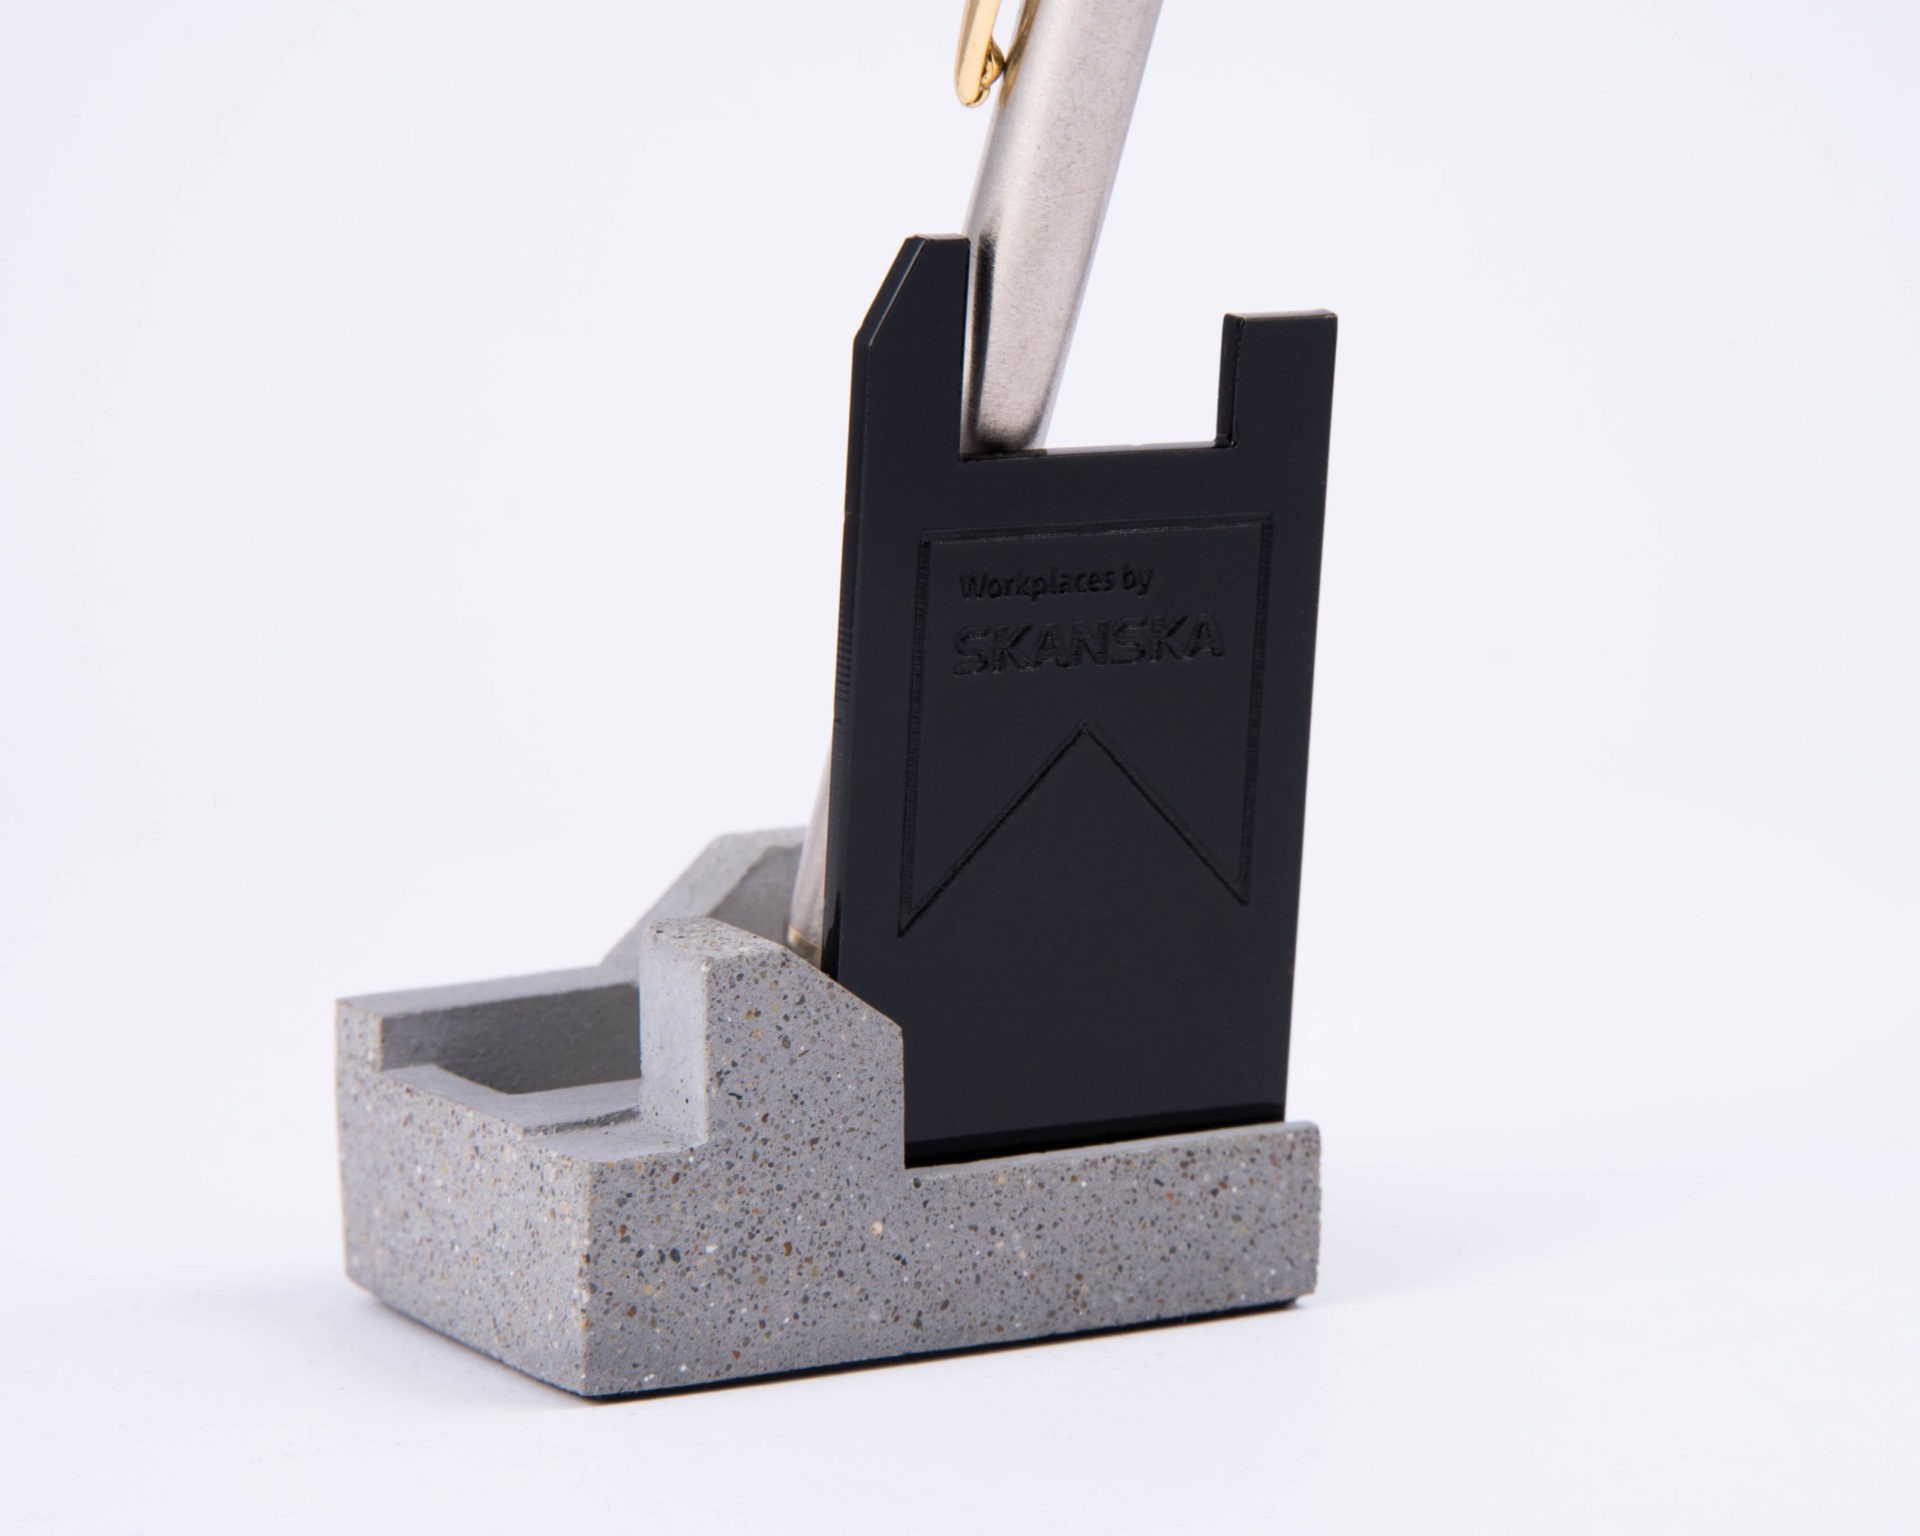 Exclusive branded pen holder for Skanska made of concrete